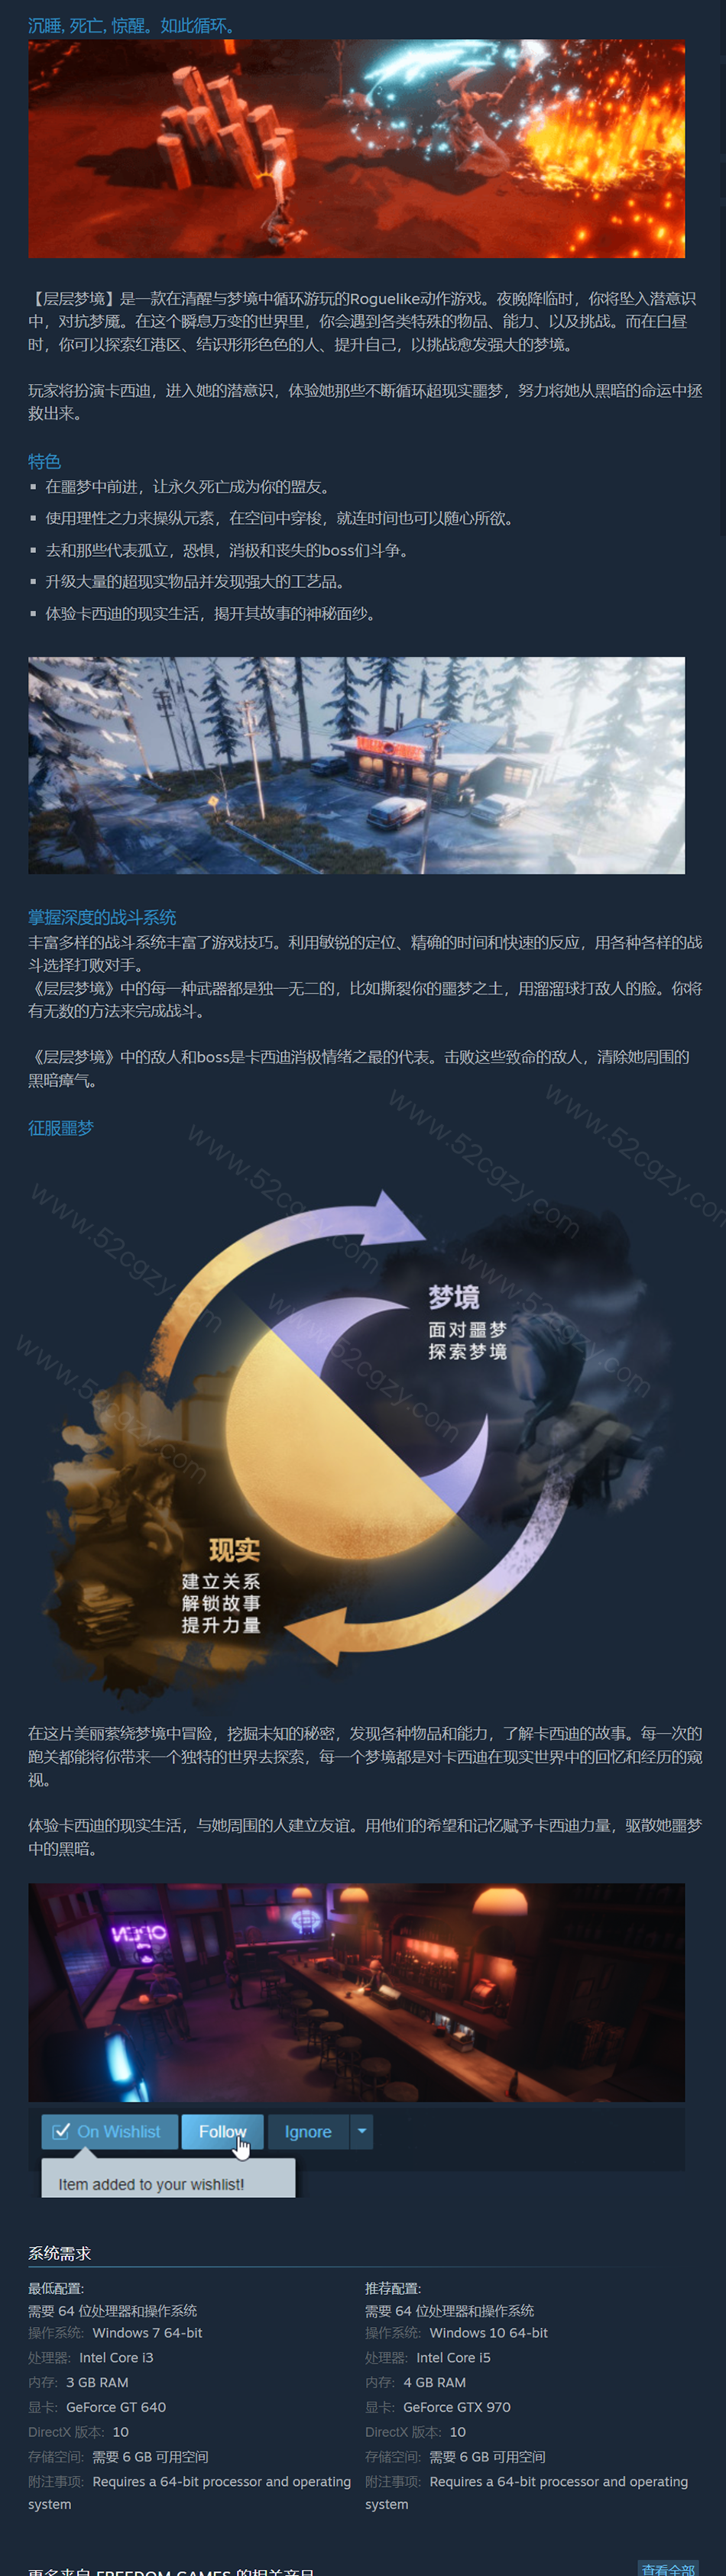 《层层梦境》免安装-正式版V1.1.1.5-中文绿色版[4.62GB] 单机游戏 第9张